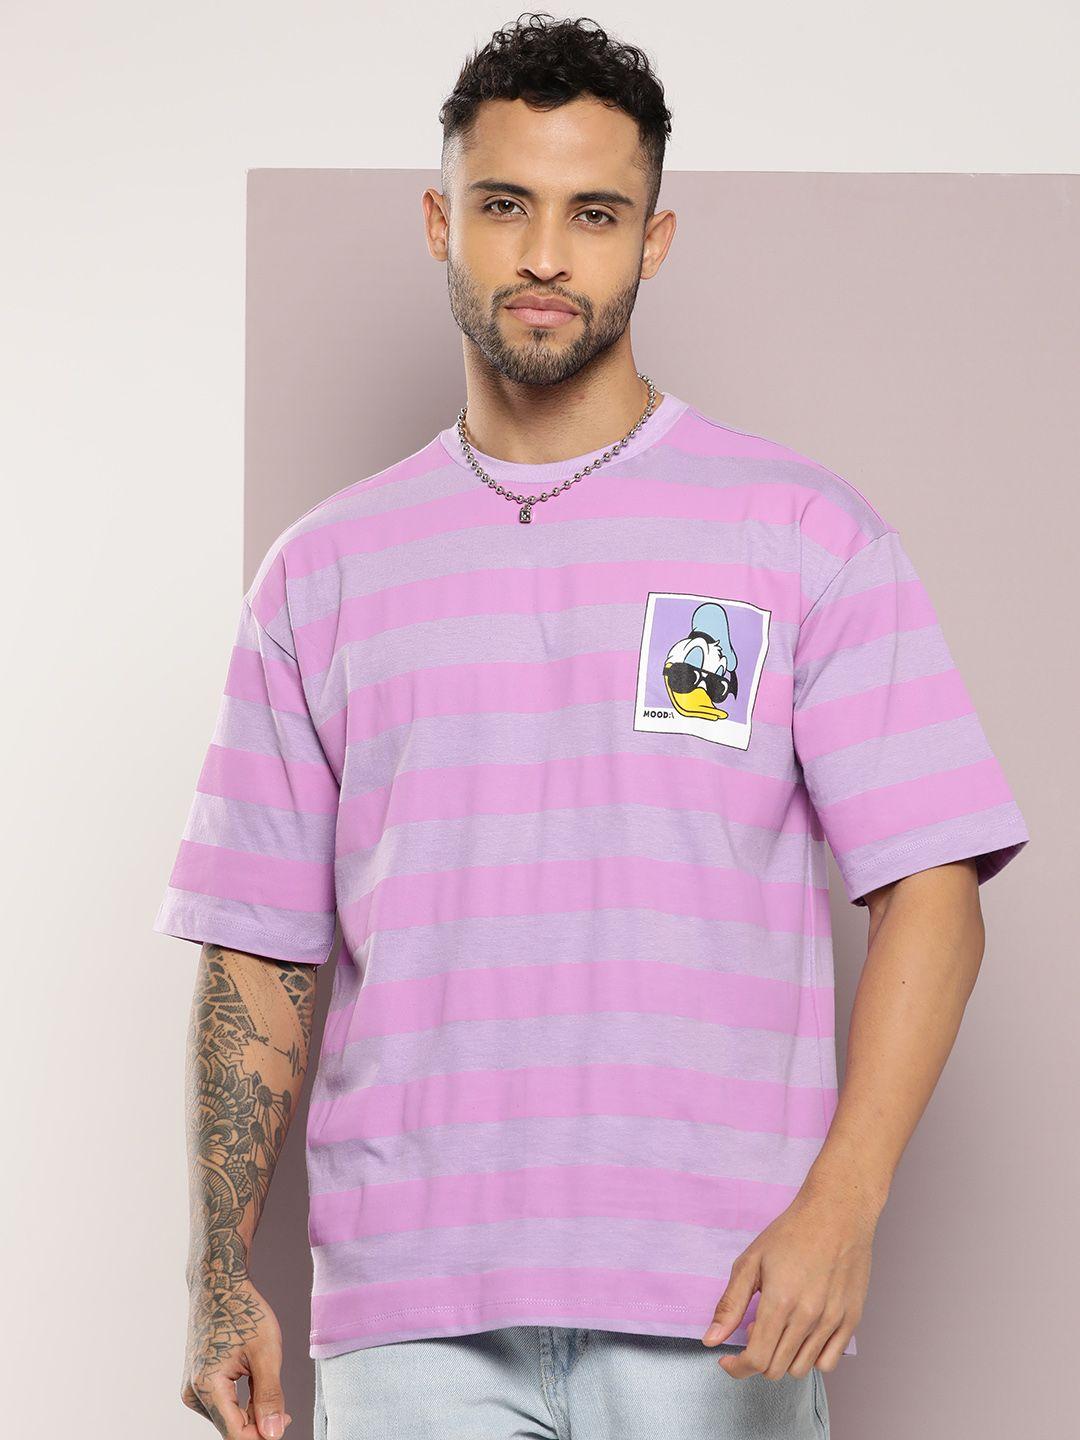 kook n keech donald duck placement print striped oversized cotton t-shirt